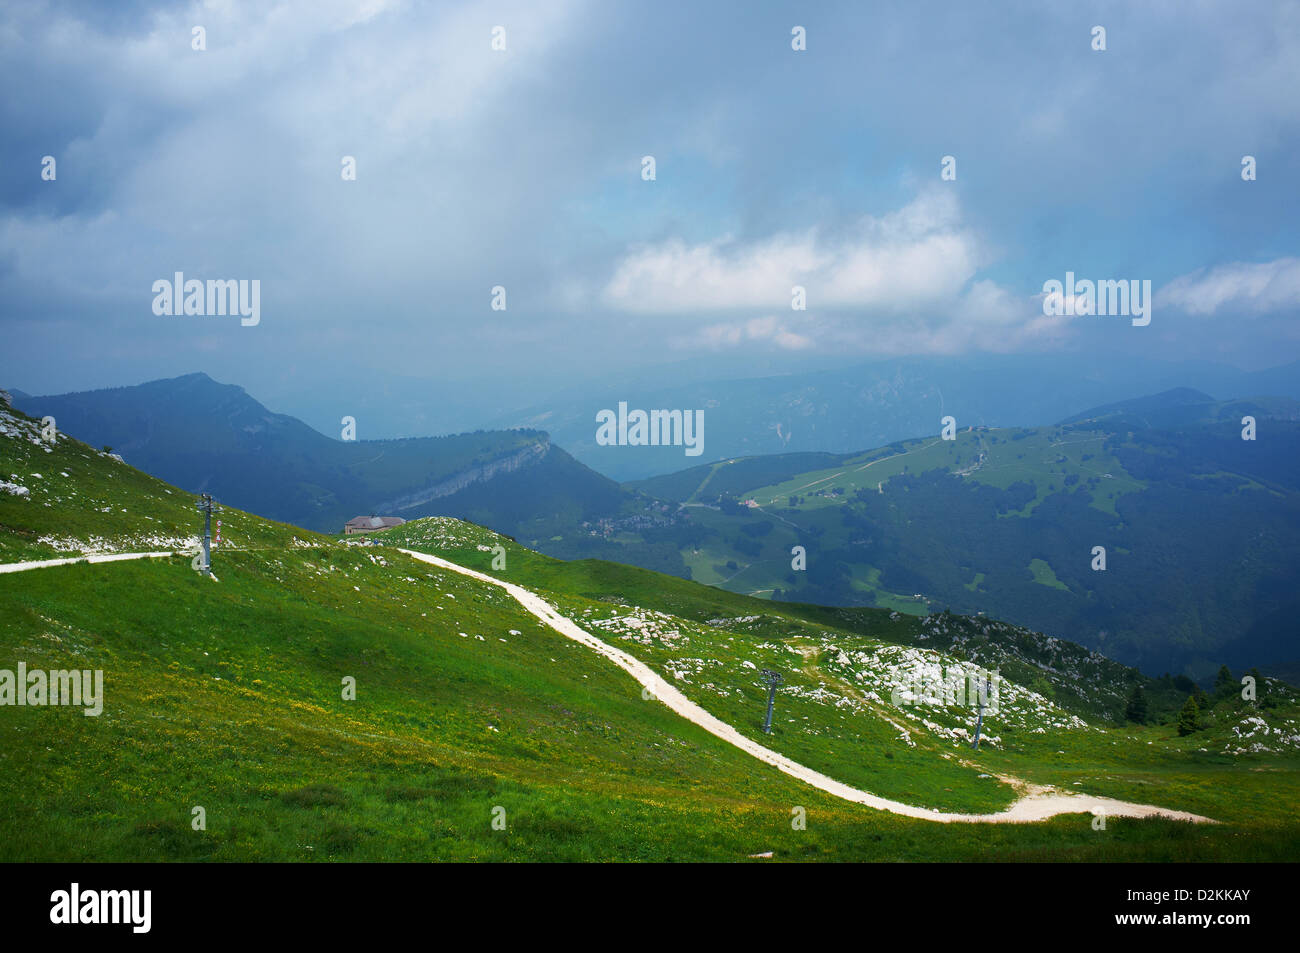 Monte Baldo mountain in summer with disused ski slope, Lake Garda Italy Stock Photo